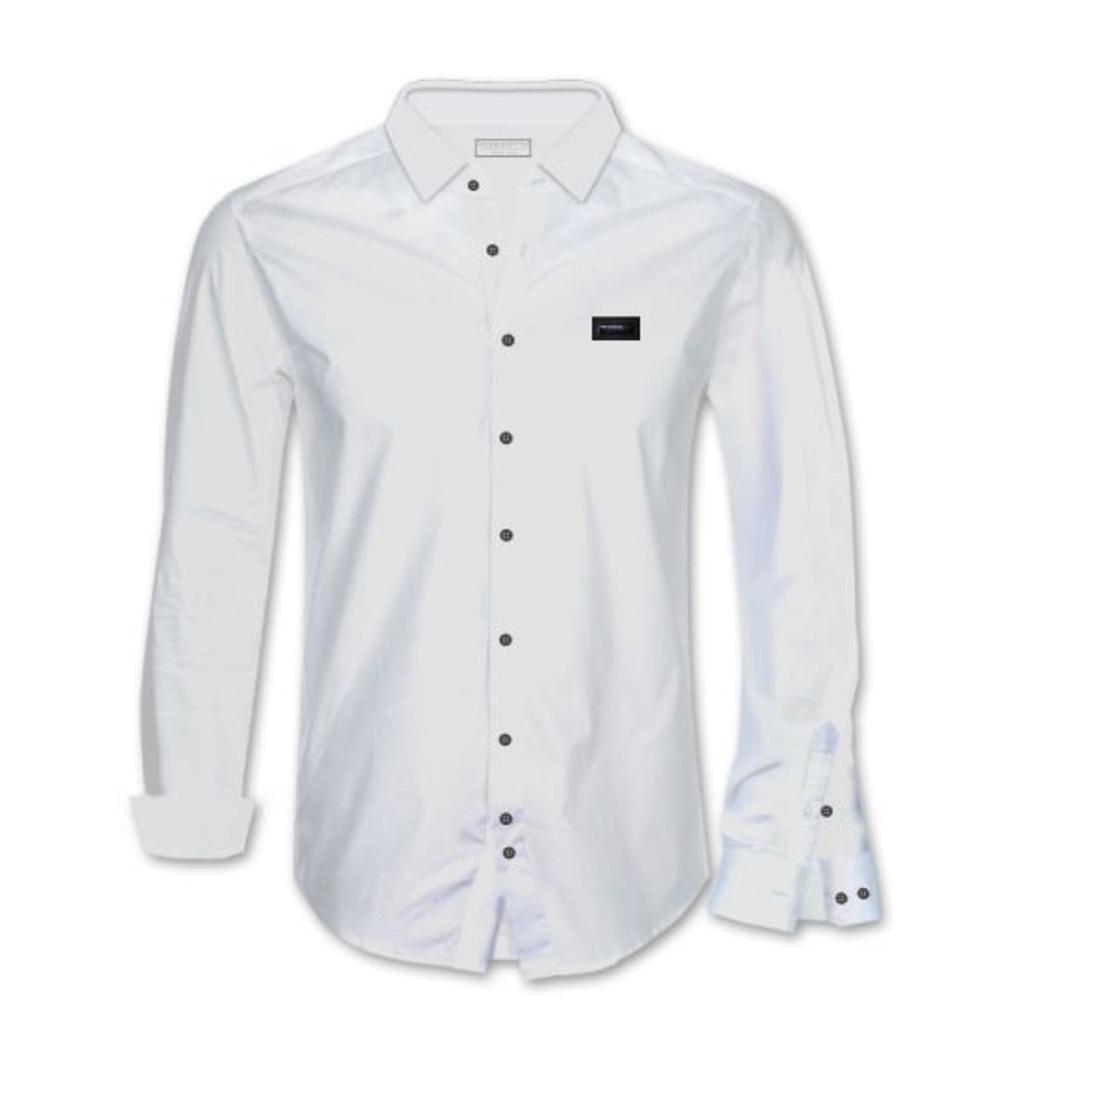 חולצת כפתורים Stretch עם פלטה - לבן -שחור